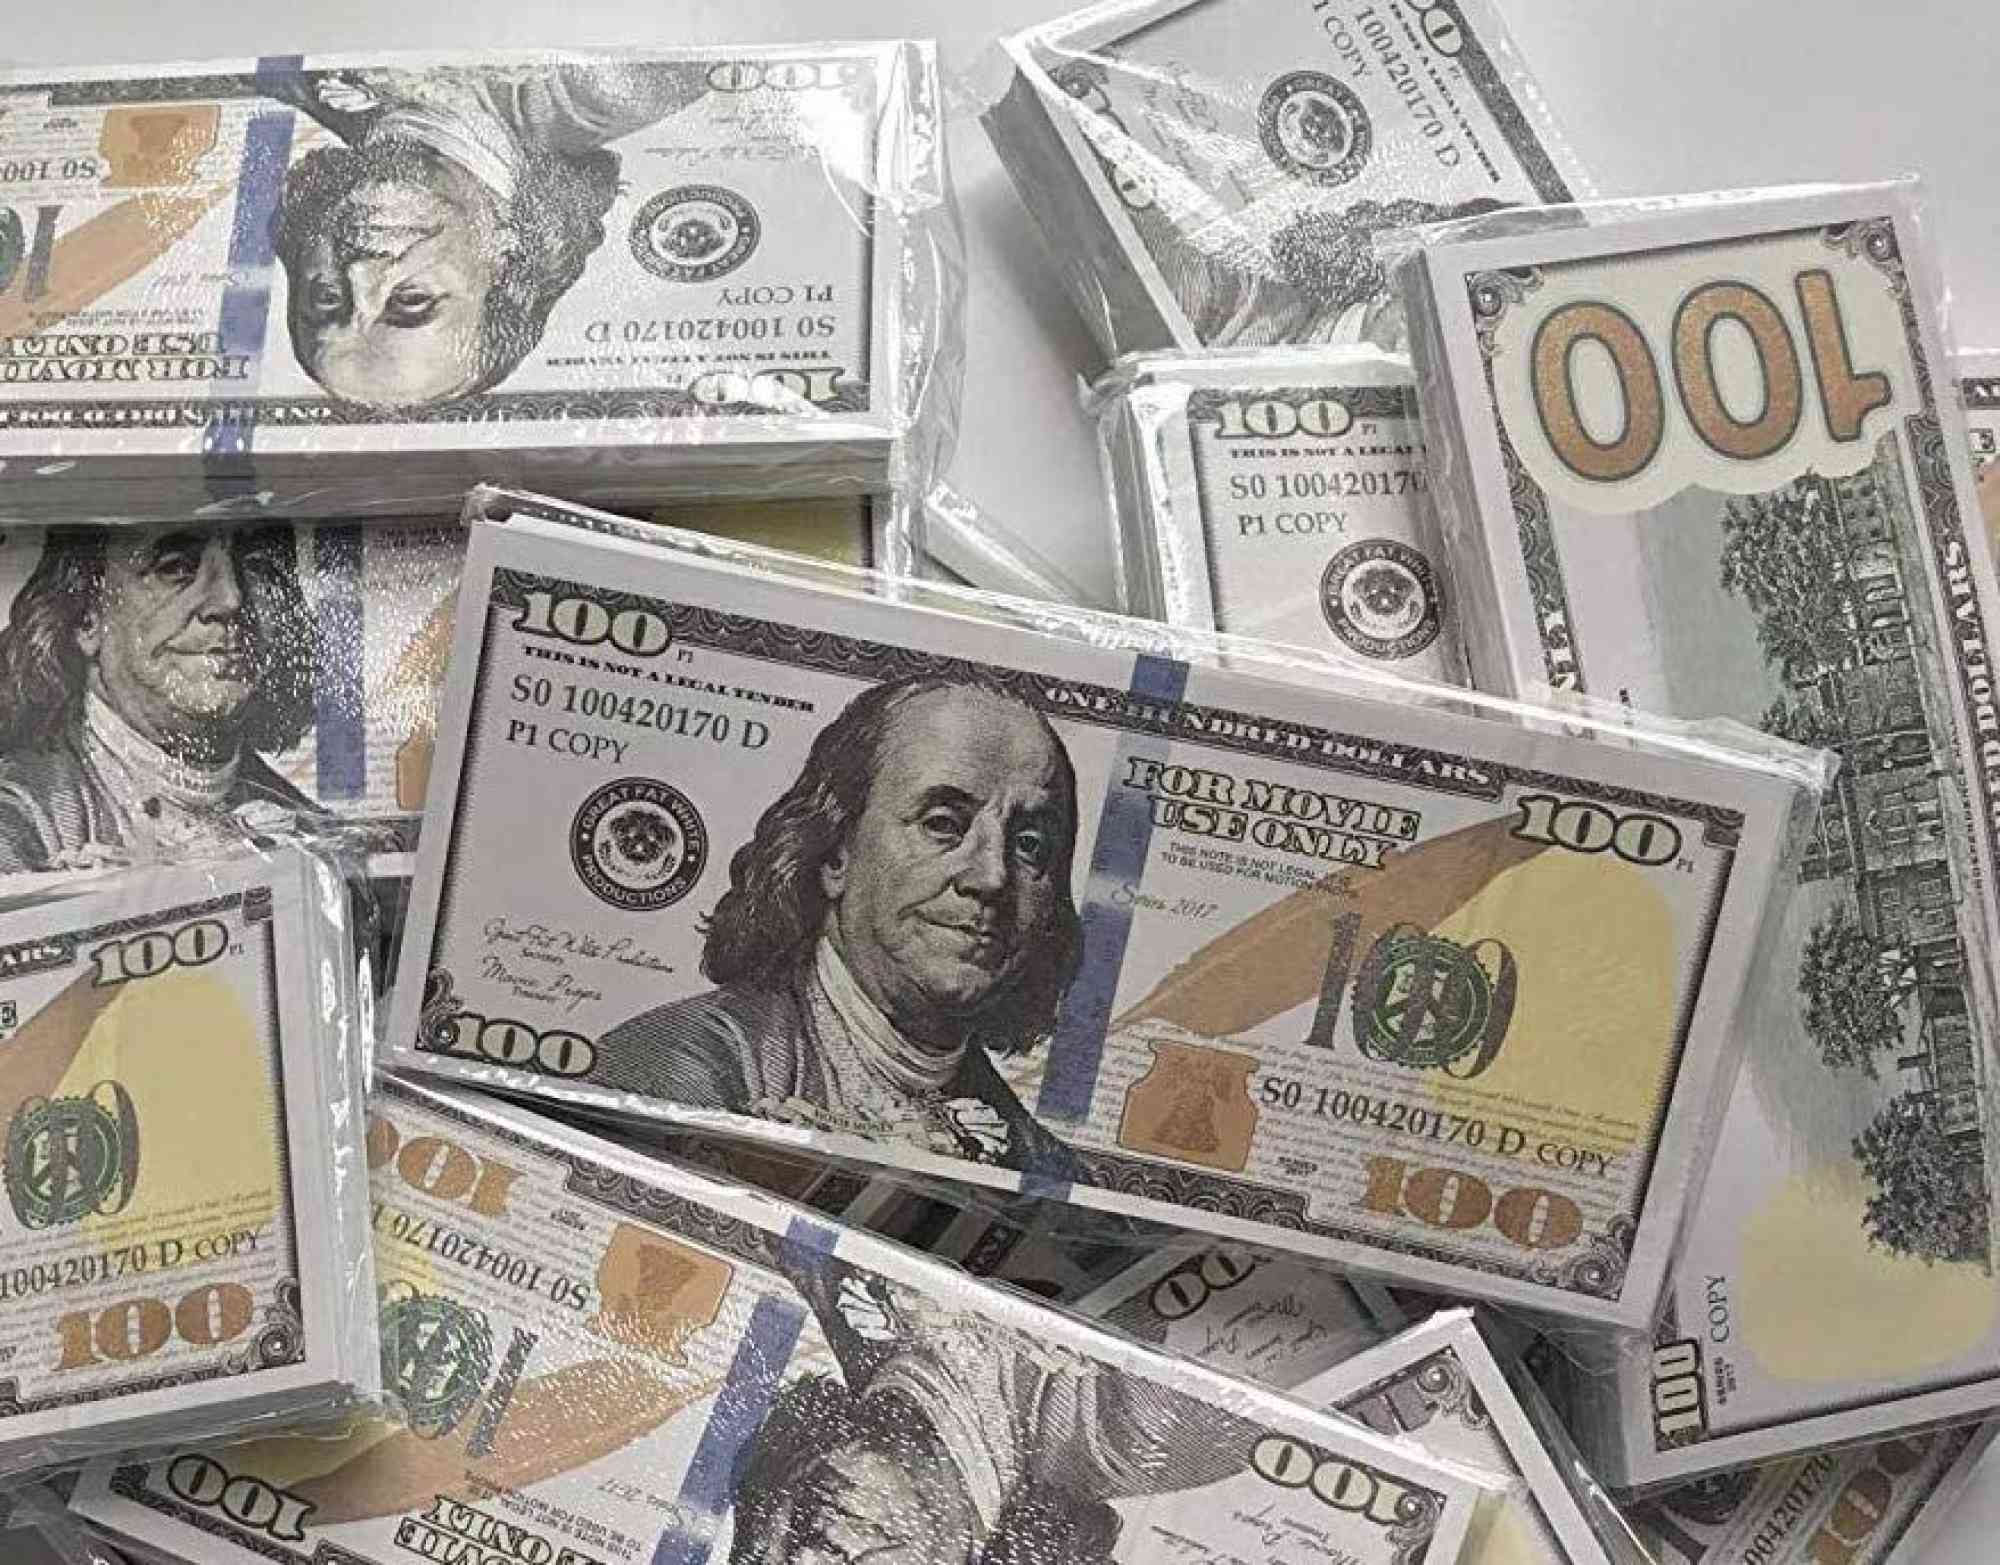  Purchase USD counterfeit dollars bills onlin en anuncio clasificado